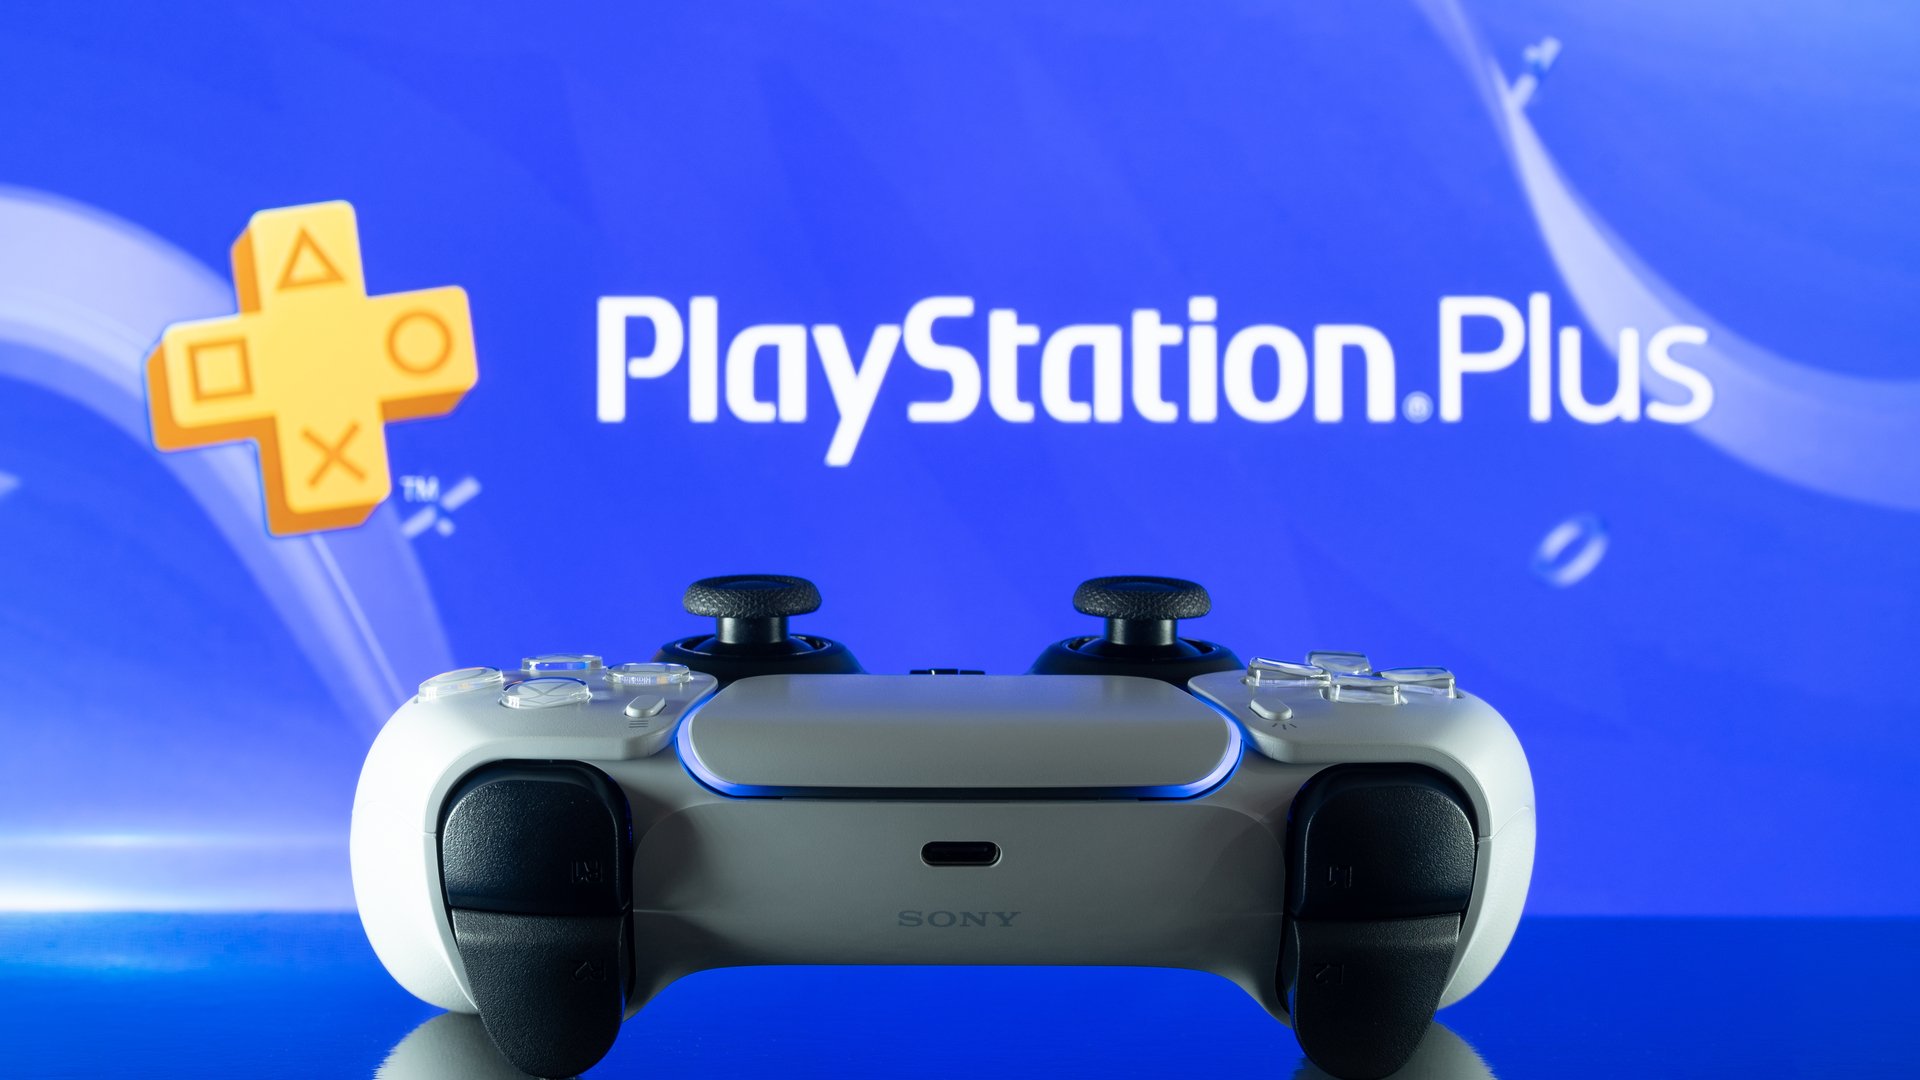 Manette PS5 DualSense devant le logo PlayStation Plus